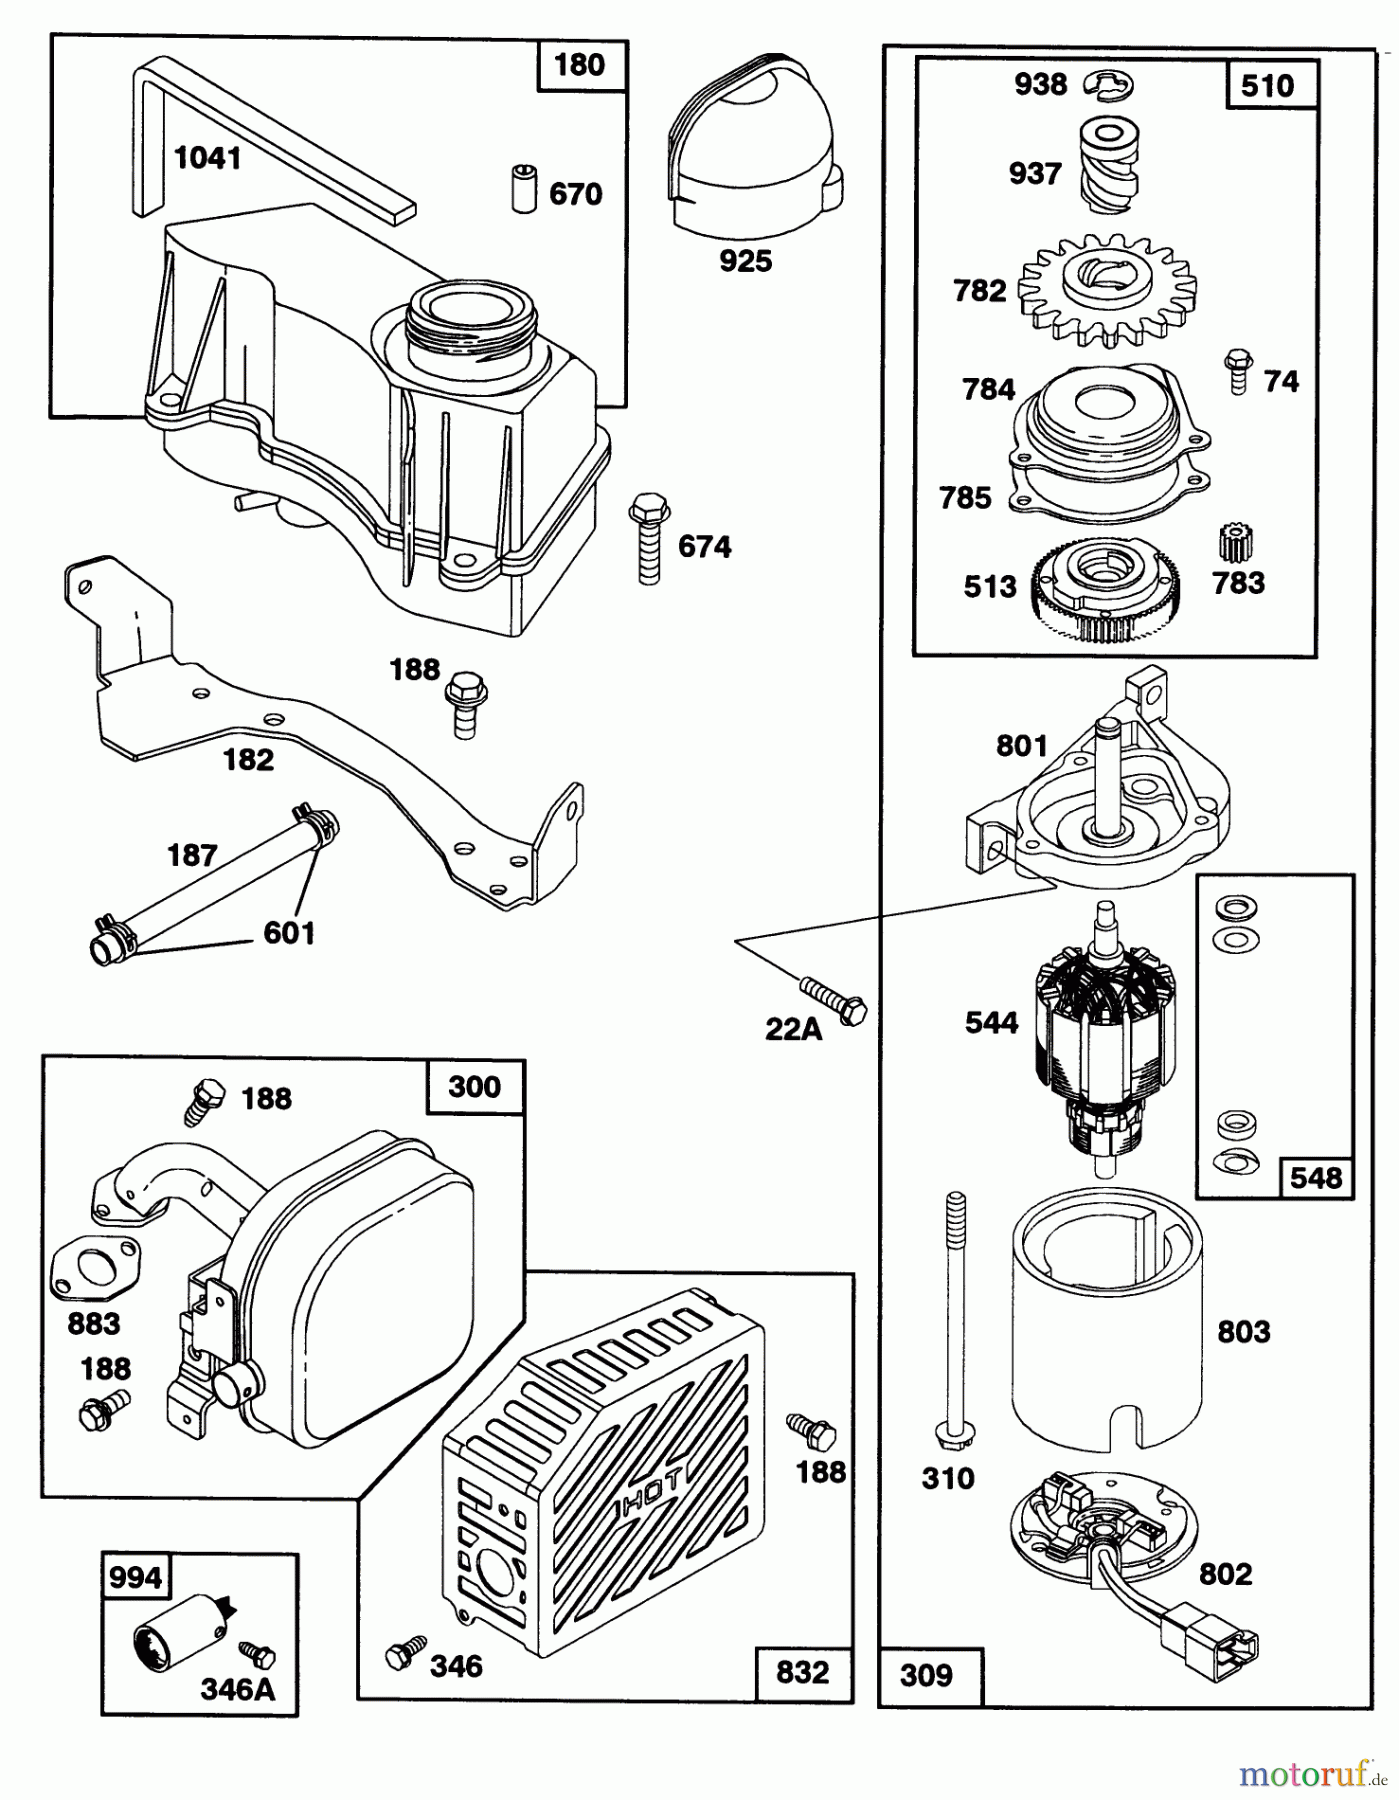  Toro Neu Mowers, Walk-Behind Seite 2 27501 - Toro Lawnmower, 1992 (2000001-2999999) ENGINE GTS-150 77-8990 #4